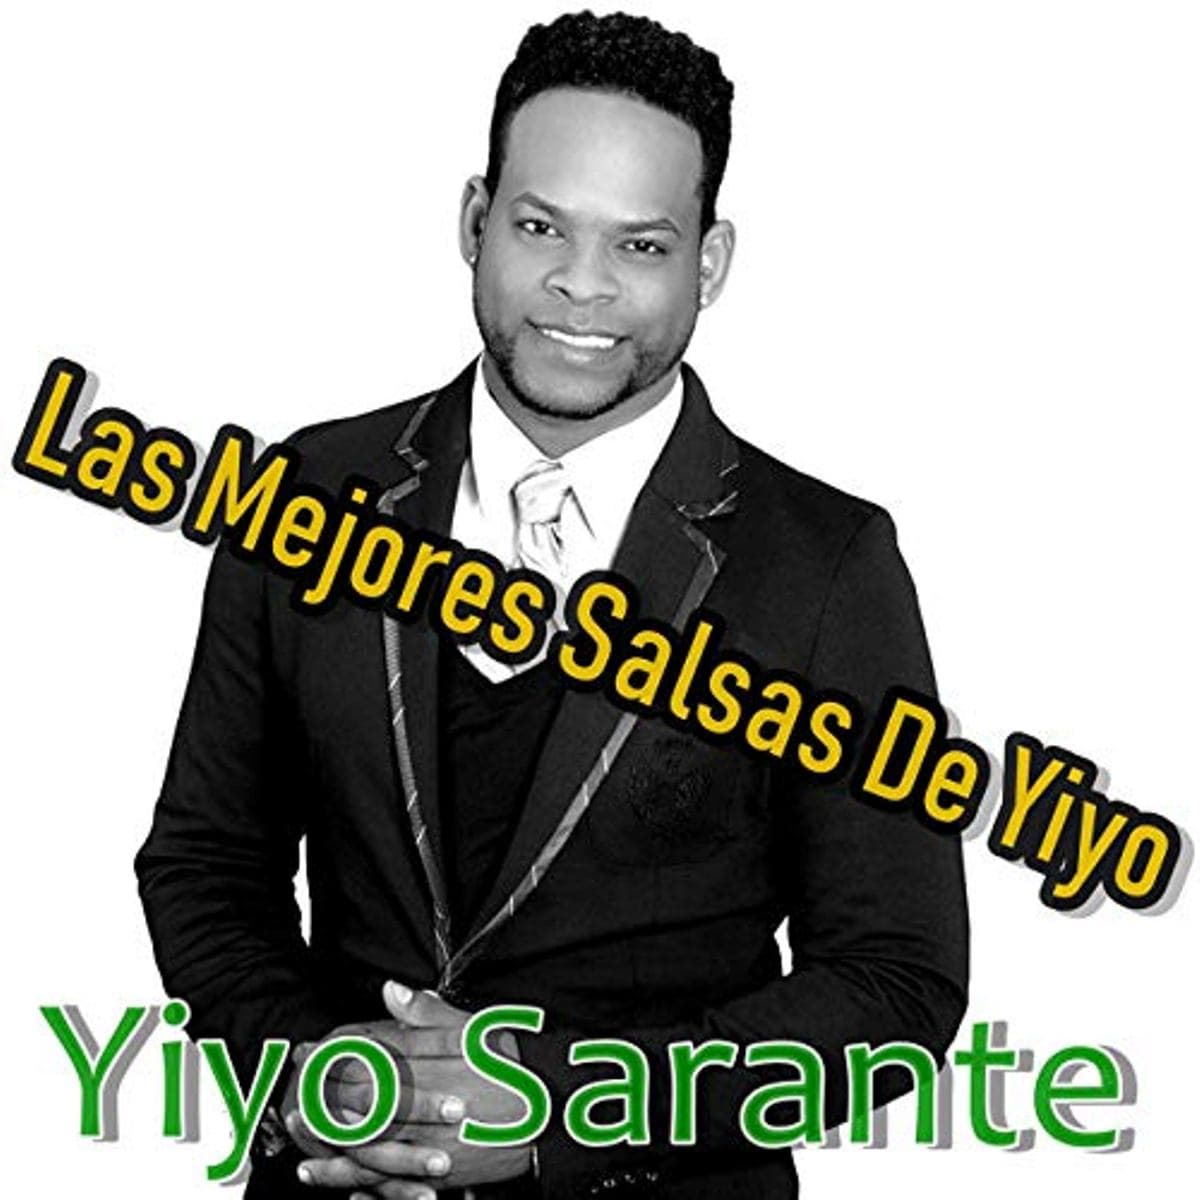 Die besten Salsa-Songs von Yiyo Sarante auf einem Album